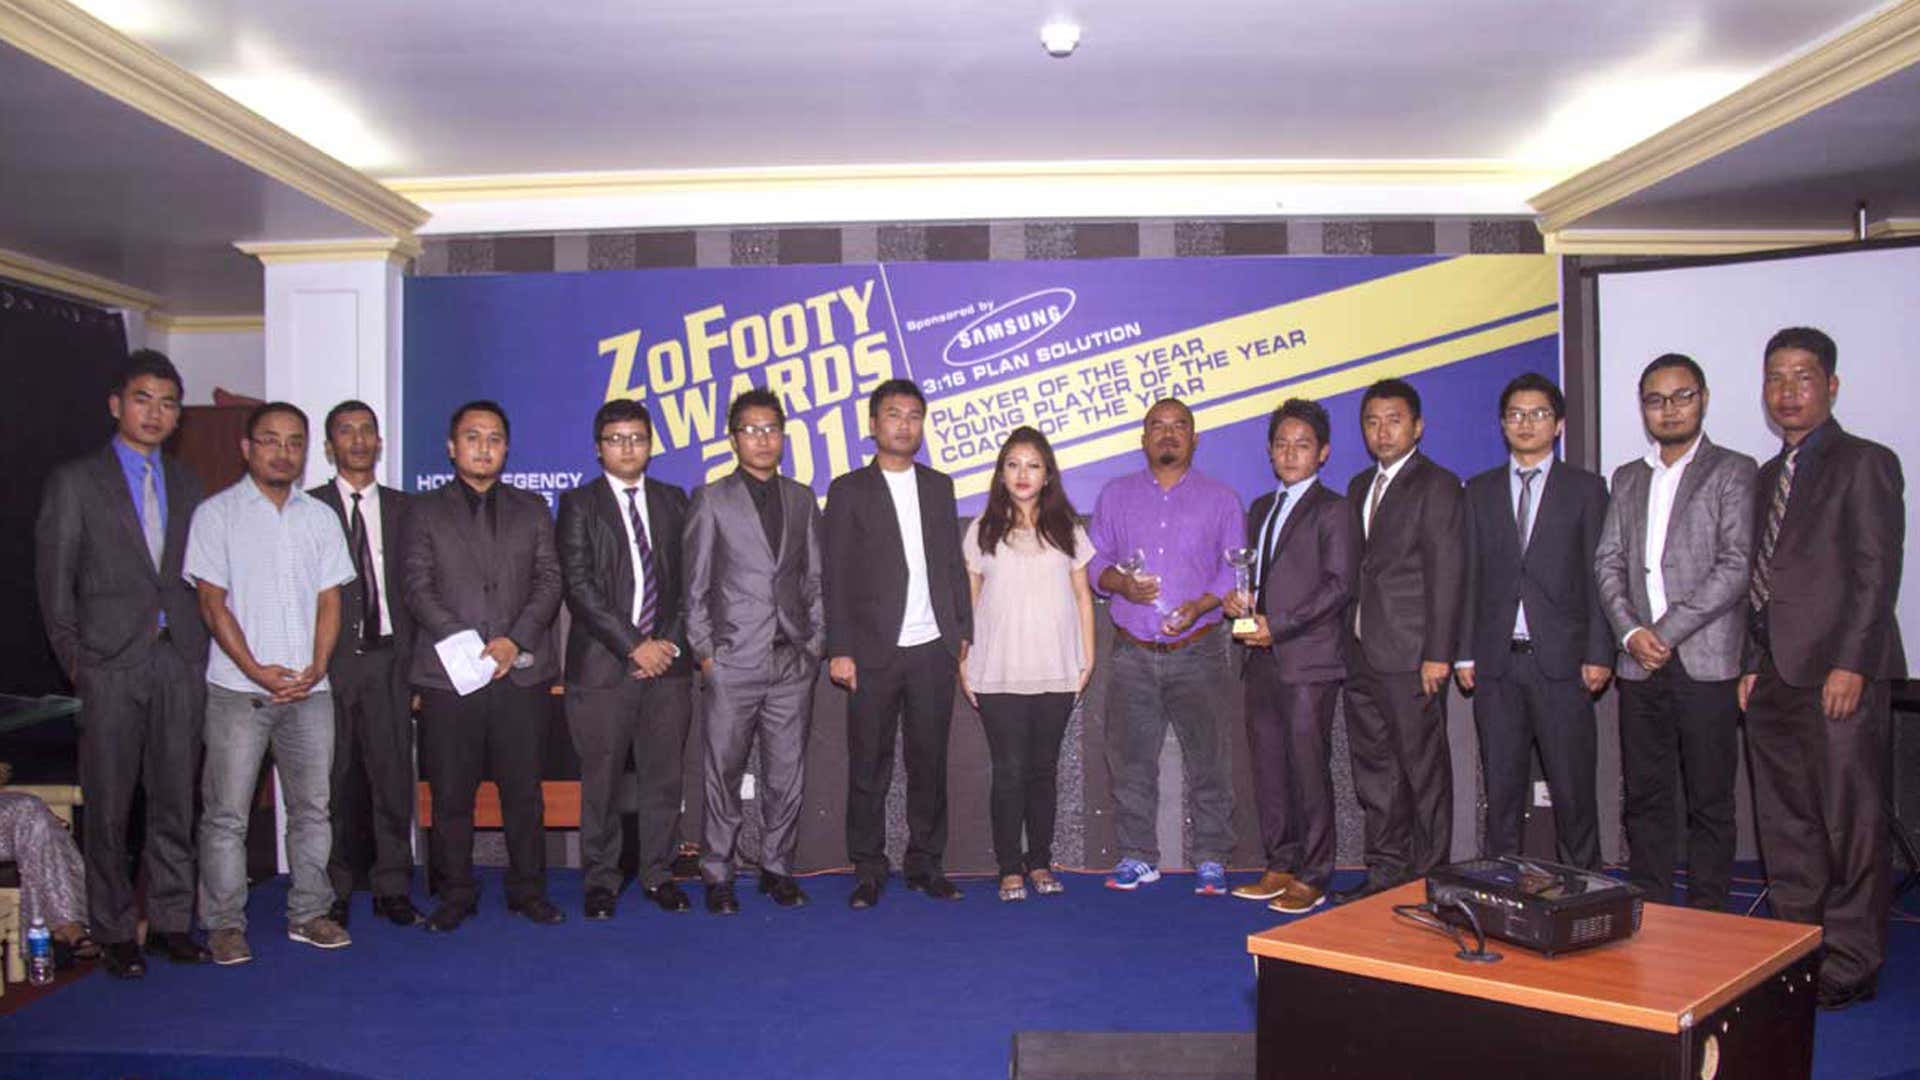 ZoFooty Awards 2015 Mizoram